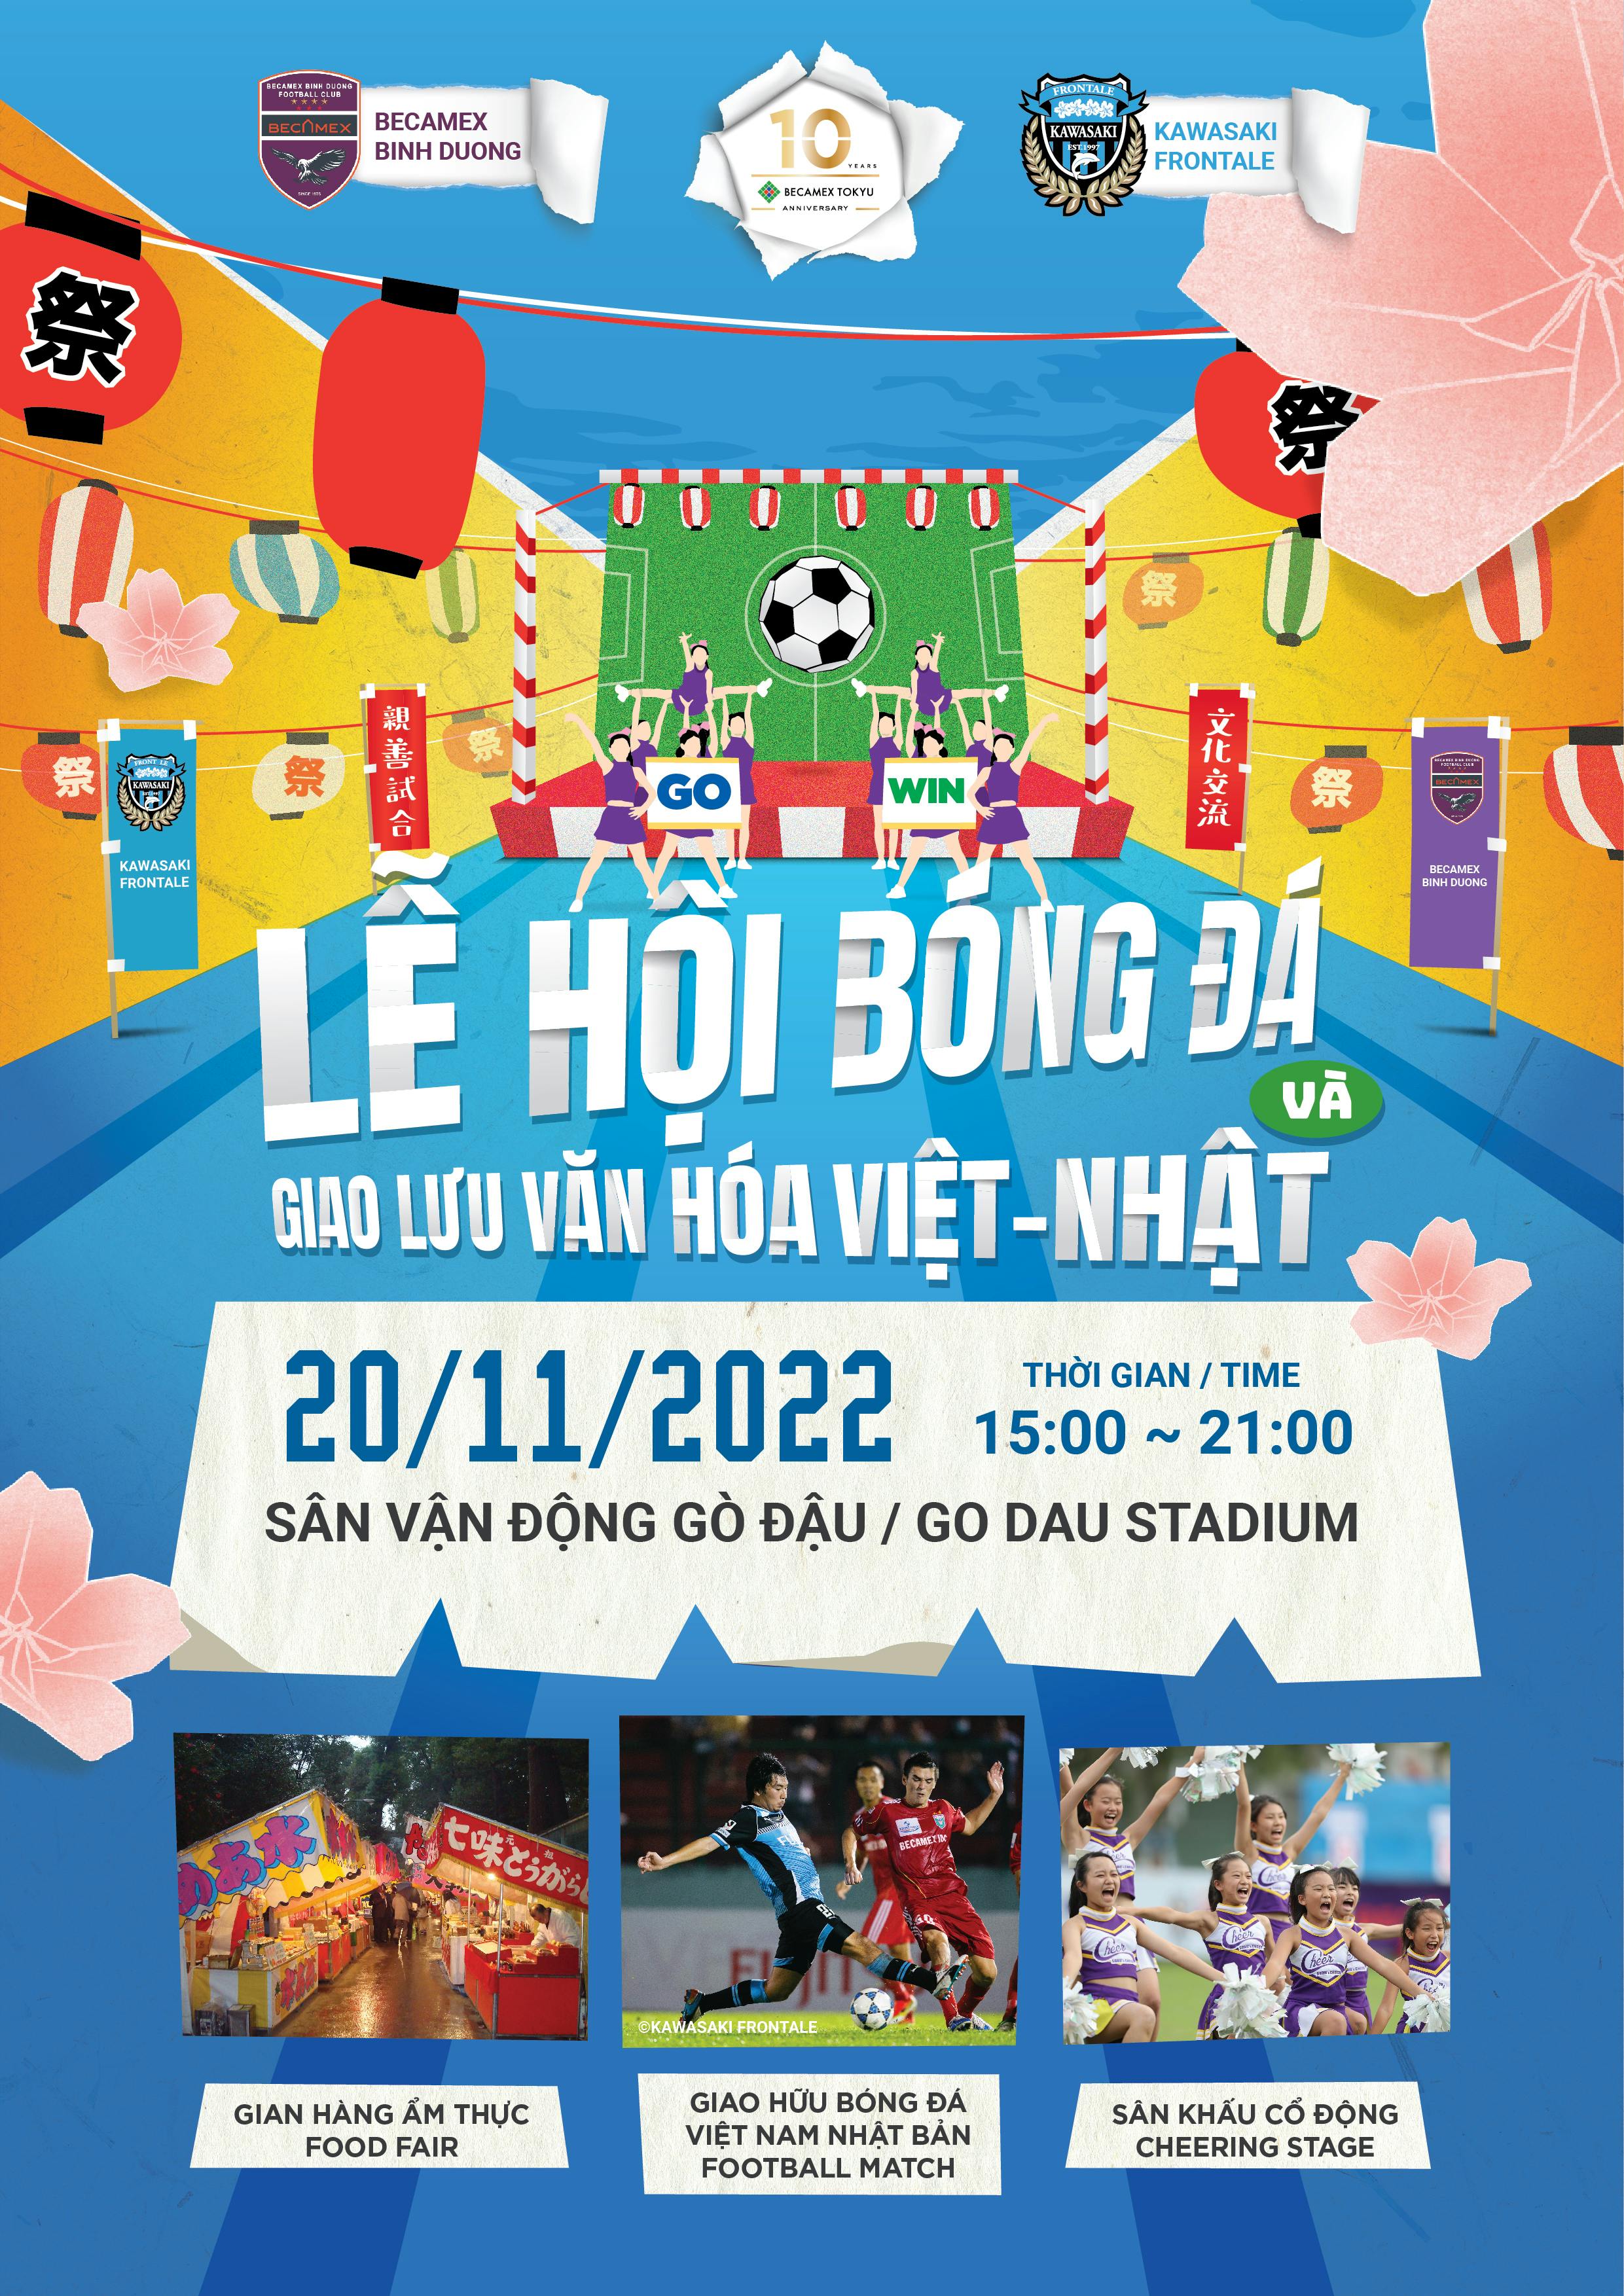 Trận đấu Giao hữu giữa CLB Becamex Bình Dương & Kawasaki Frontale  — Lễ hội Bóng đá và Giao lưu Văn hóa Việt-Nhật ​